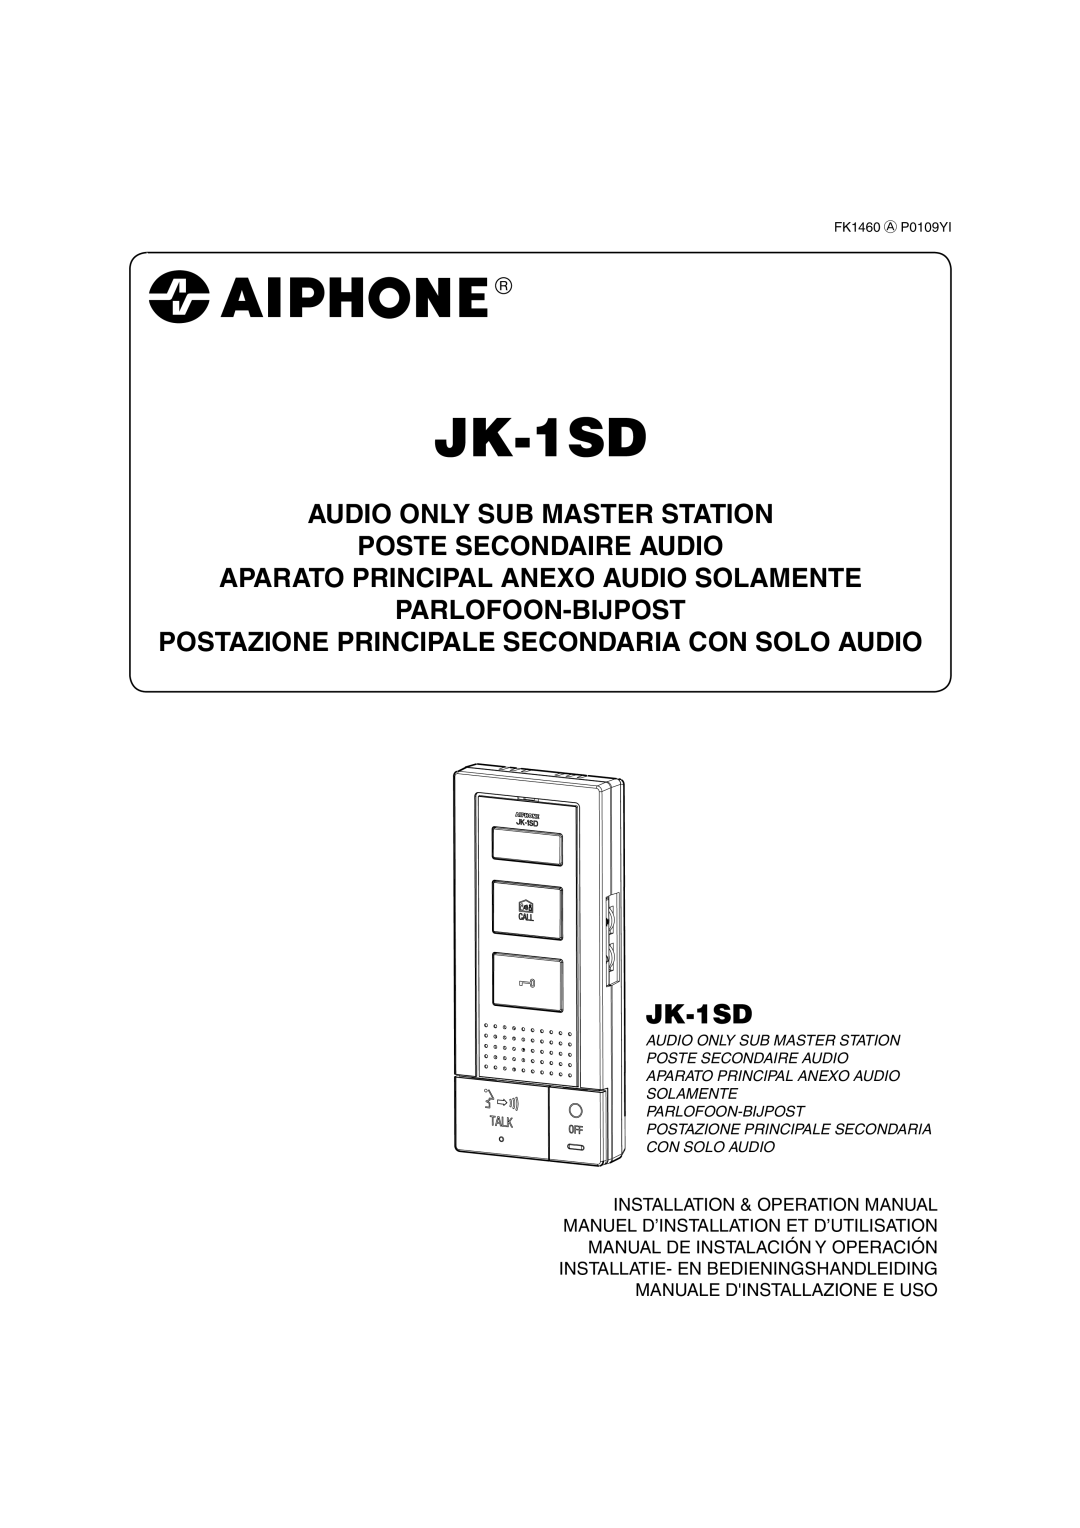 Aiphone JK-1SD operation manual Manuel D’Installation Et D’Utilisation, Manual De Instalación Y Operación, FK1460 P0109YI 